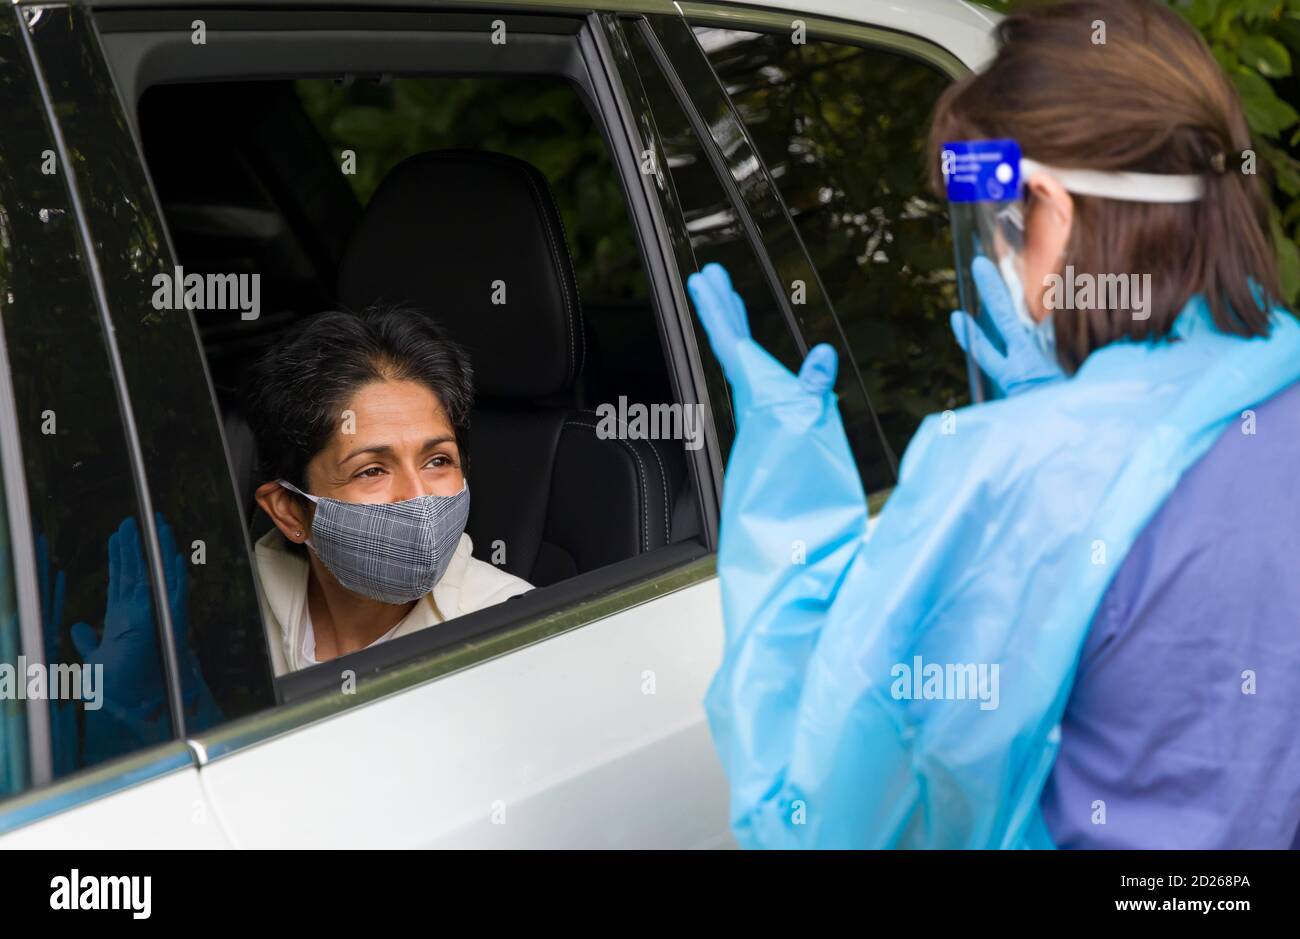 Coronavirus- oder COVID-19-Prävention in einem Testzentrum in England, Großbritannien. Asiatische Frau in einem Auto trägt eine Gesichtsmaske, im Gespräch mit einer Krankenschwester in voller PSA-Ausrüstung. Stockfoto